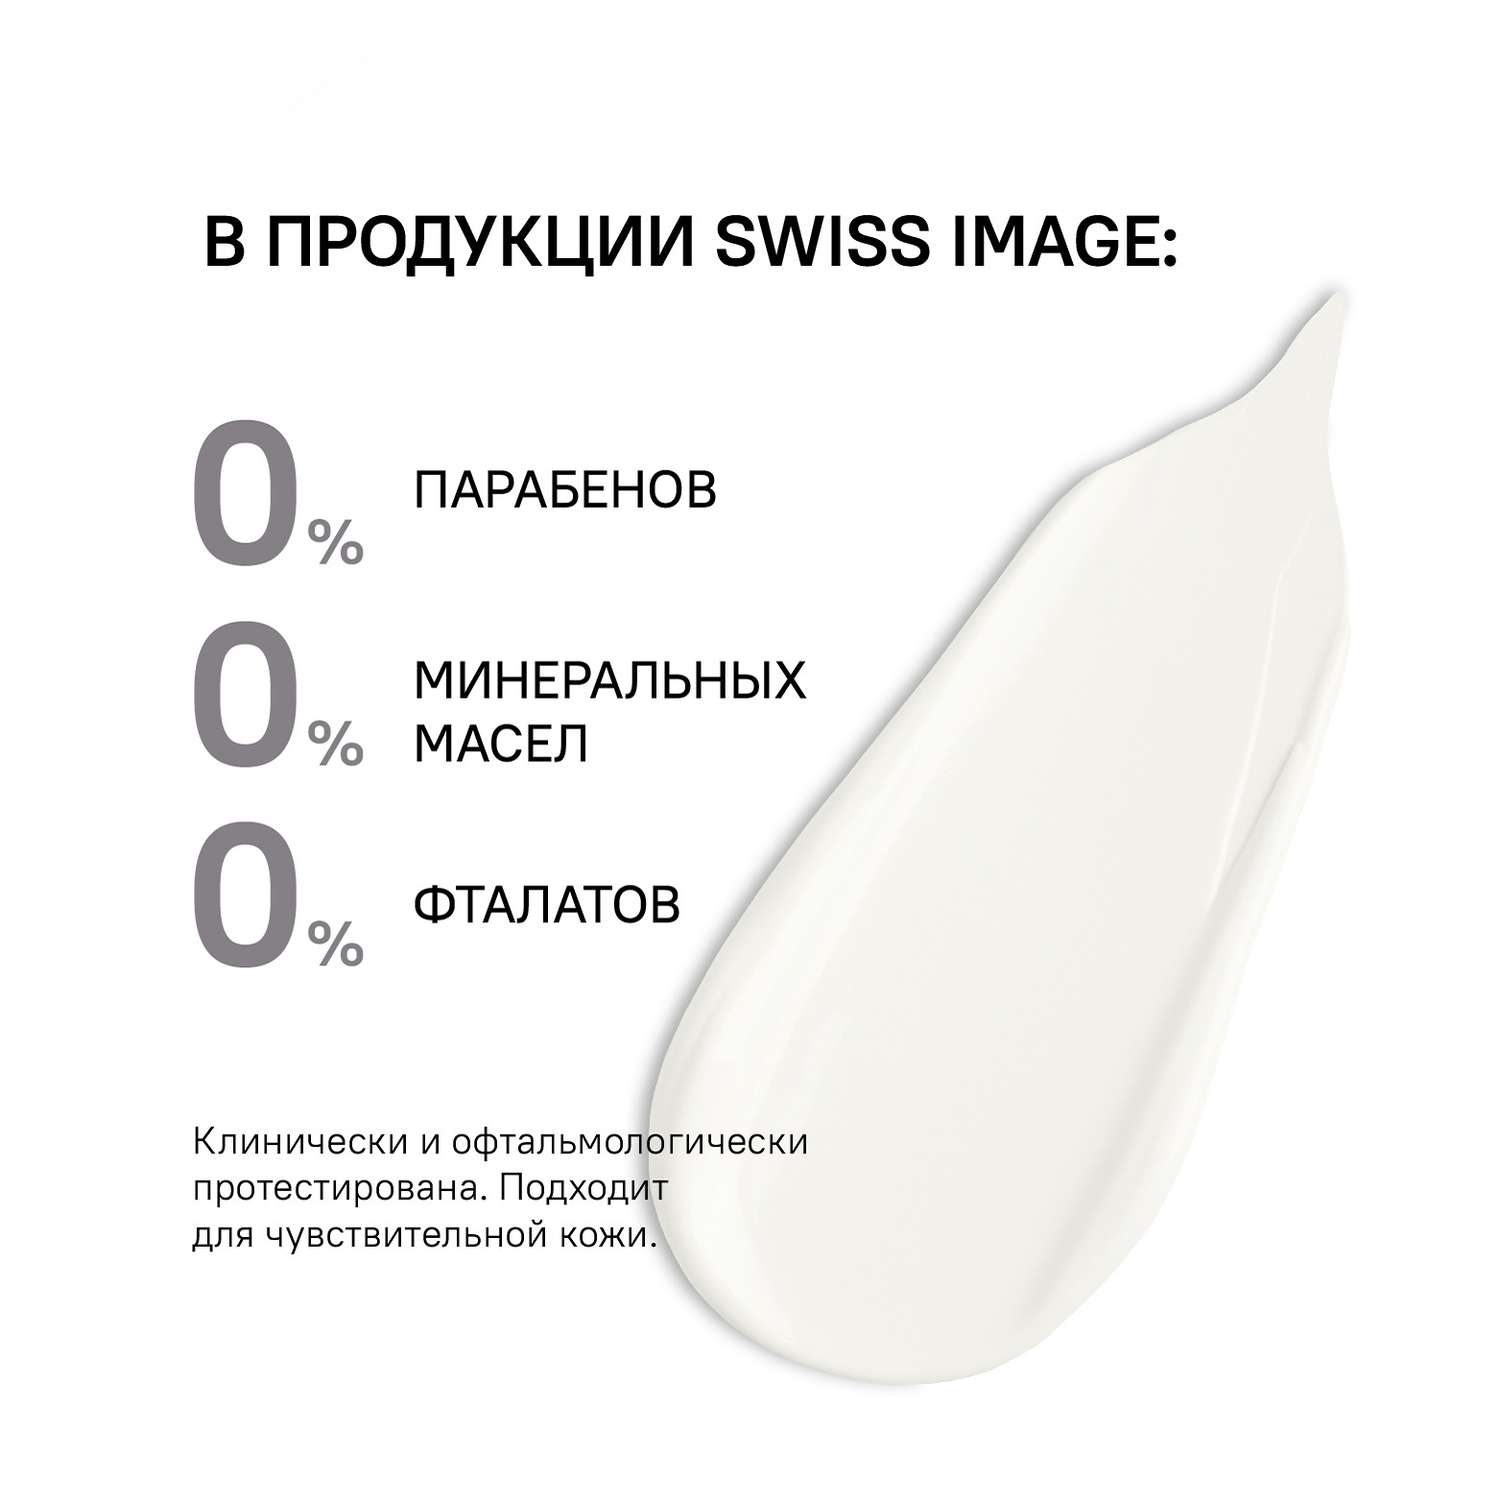 Осветляющий дневной крем Swiss image для лица выравнивающий тон кожи 50 мл - фото 10